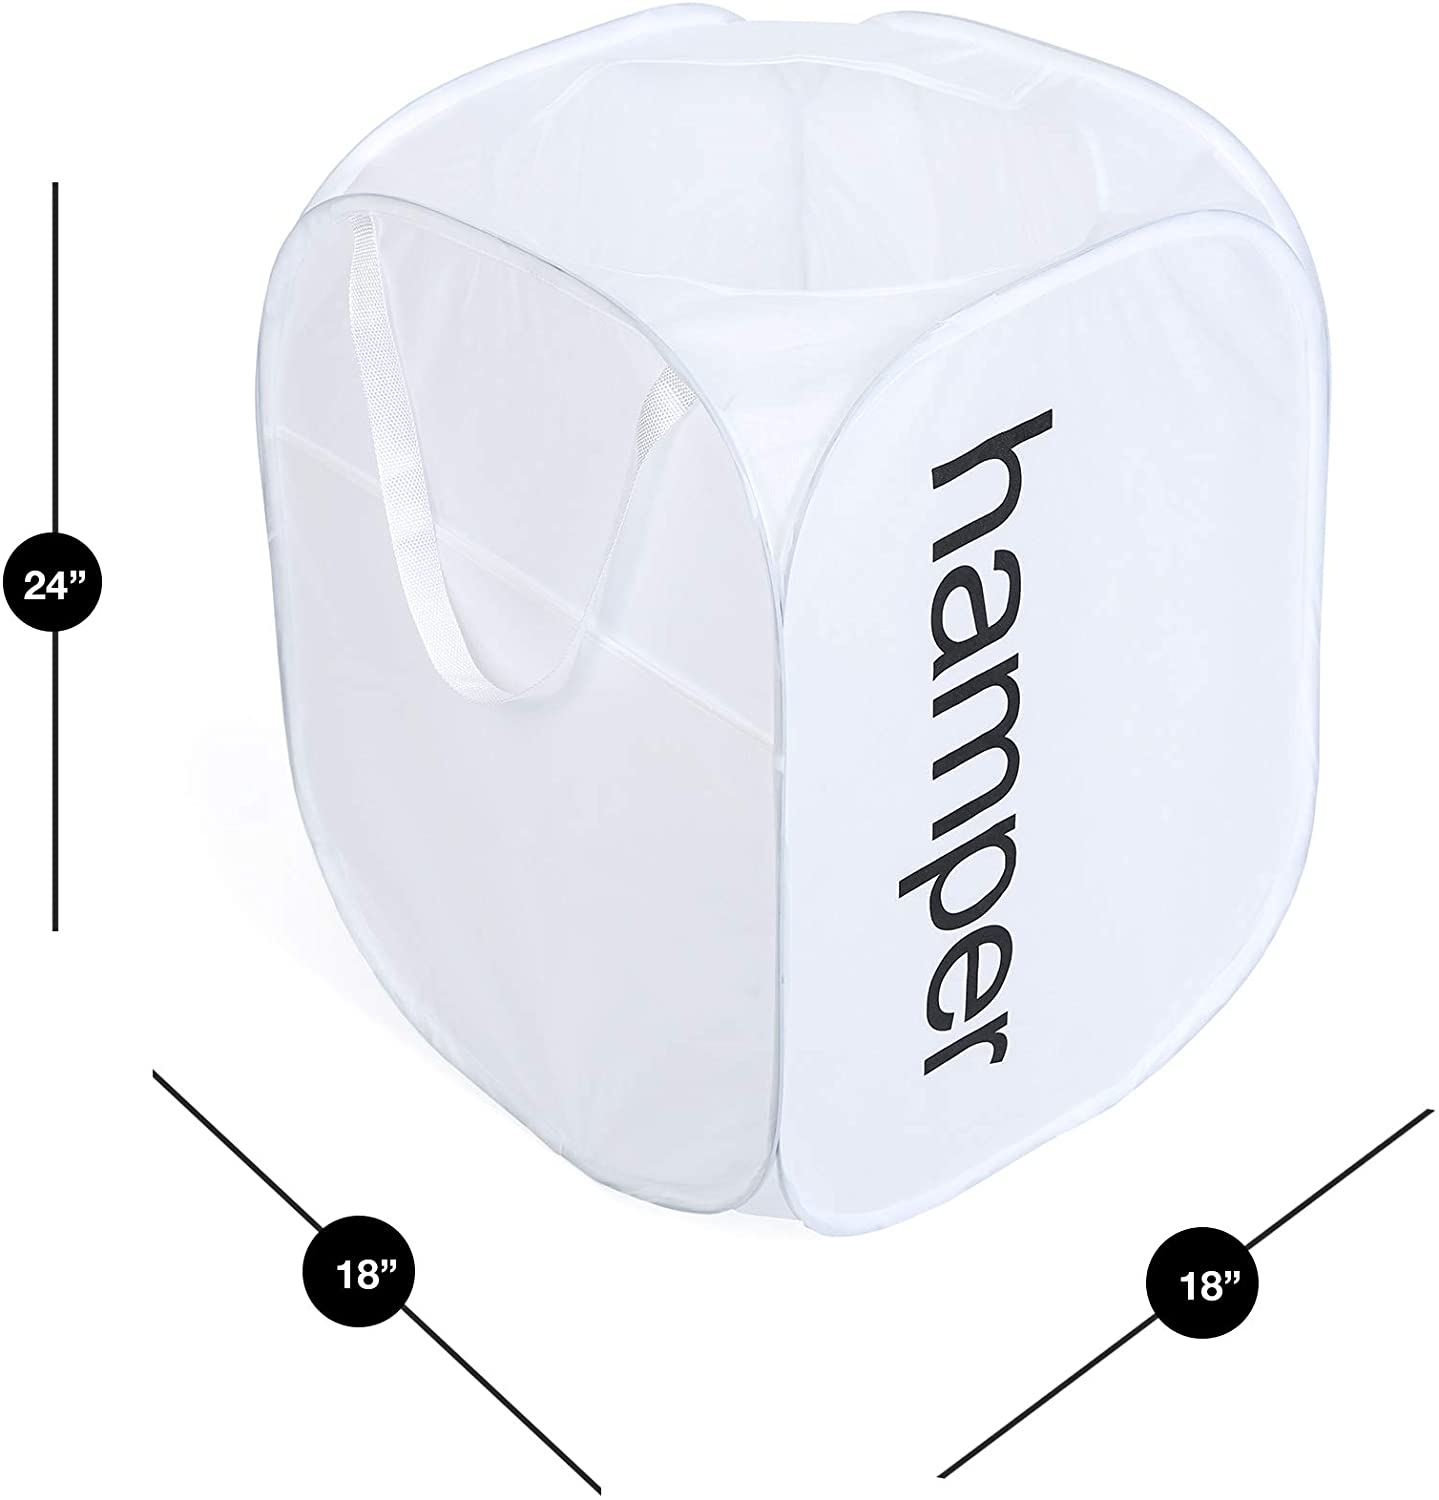 King Size Pop Up Laundry Hamper with Side Pocket and Handles - Holds 3 Loads - Smart Design® 3